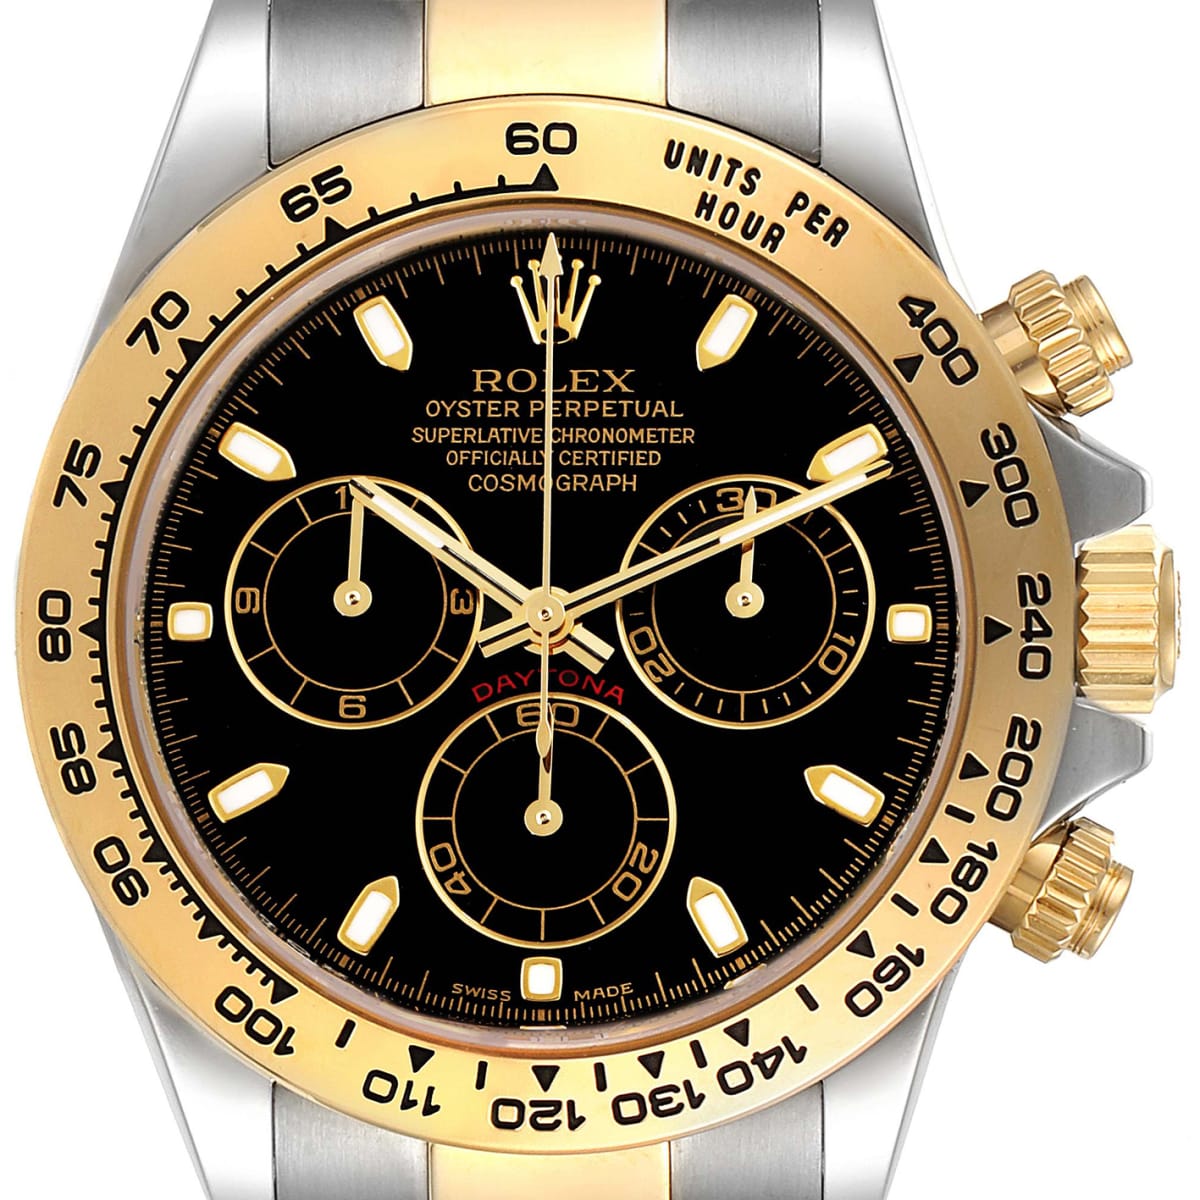 Nedostatkové hodinky jako Rolex Cosmograph Daytona ve zlatém provedení lze prodat za dvojnásobnou cenu, než je ta oficiální.